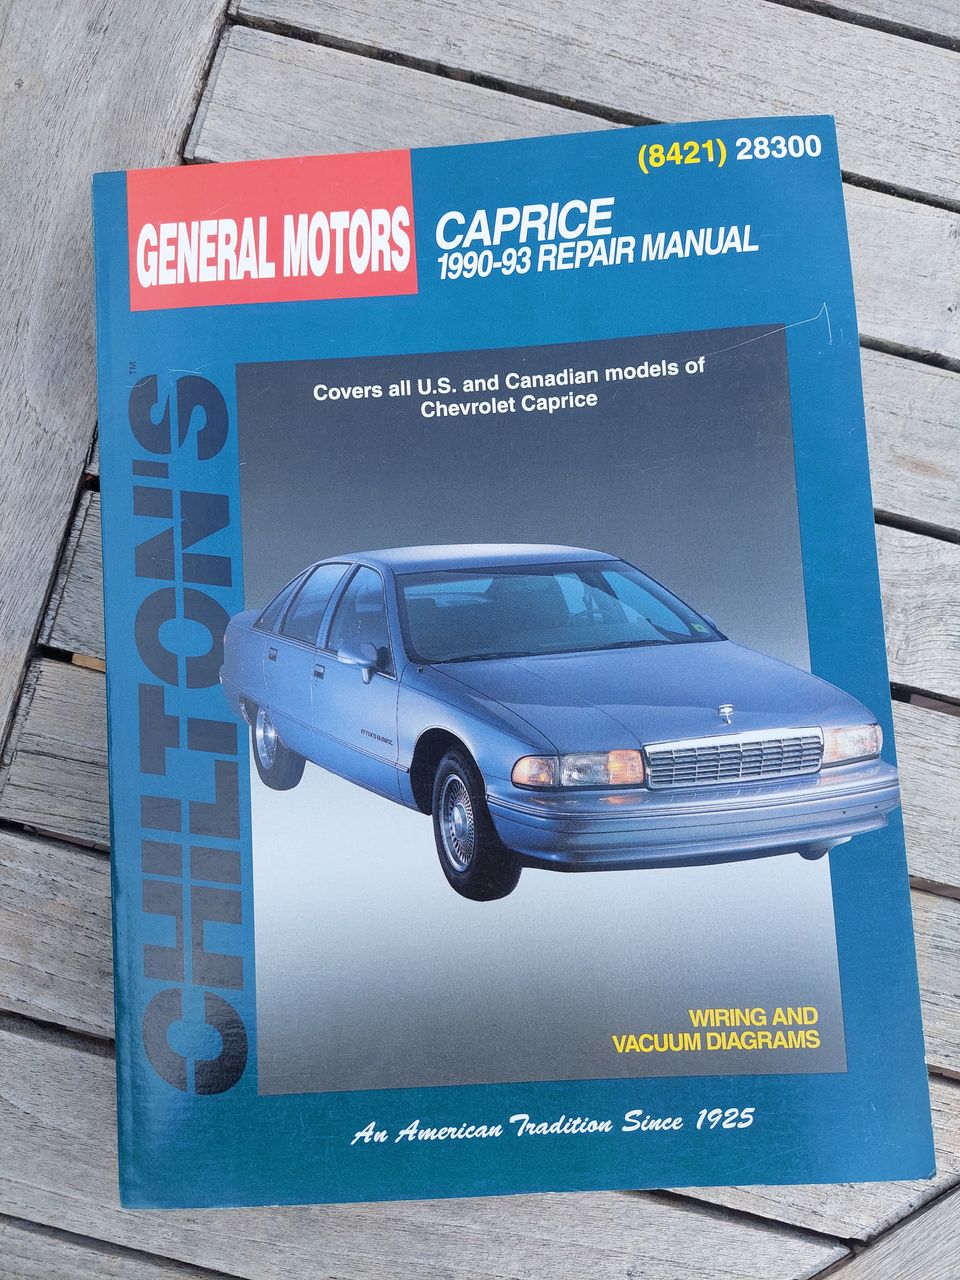 Chevrolet Caprice 1990-93 Repair manual